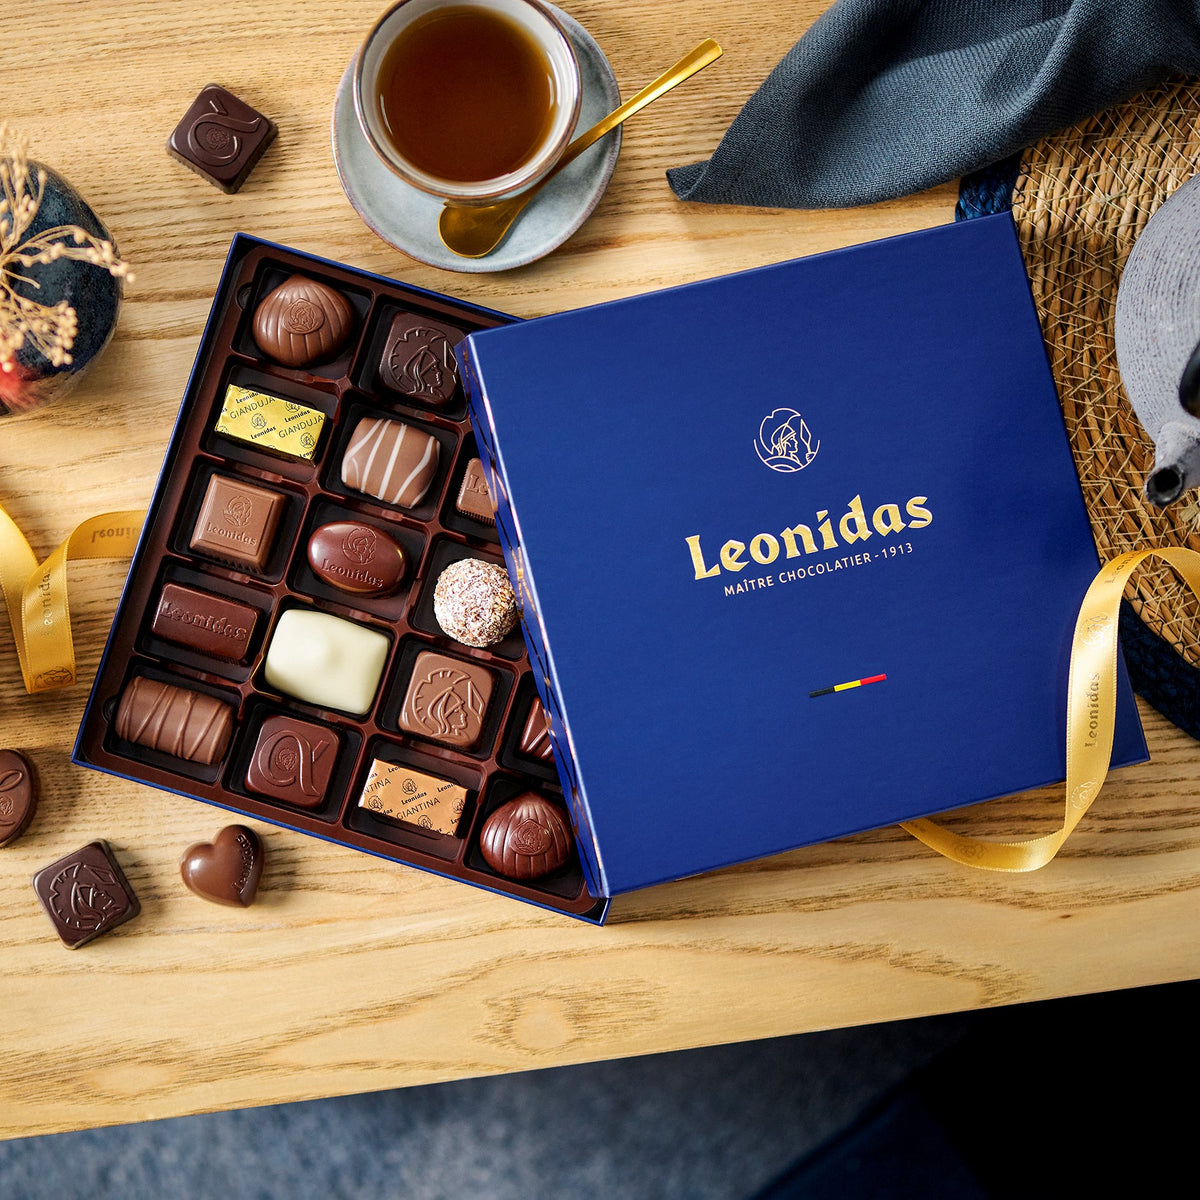 Leonidas Milk Chocolate Assortment